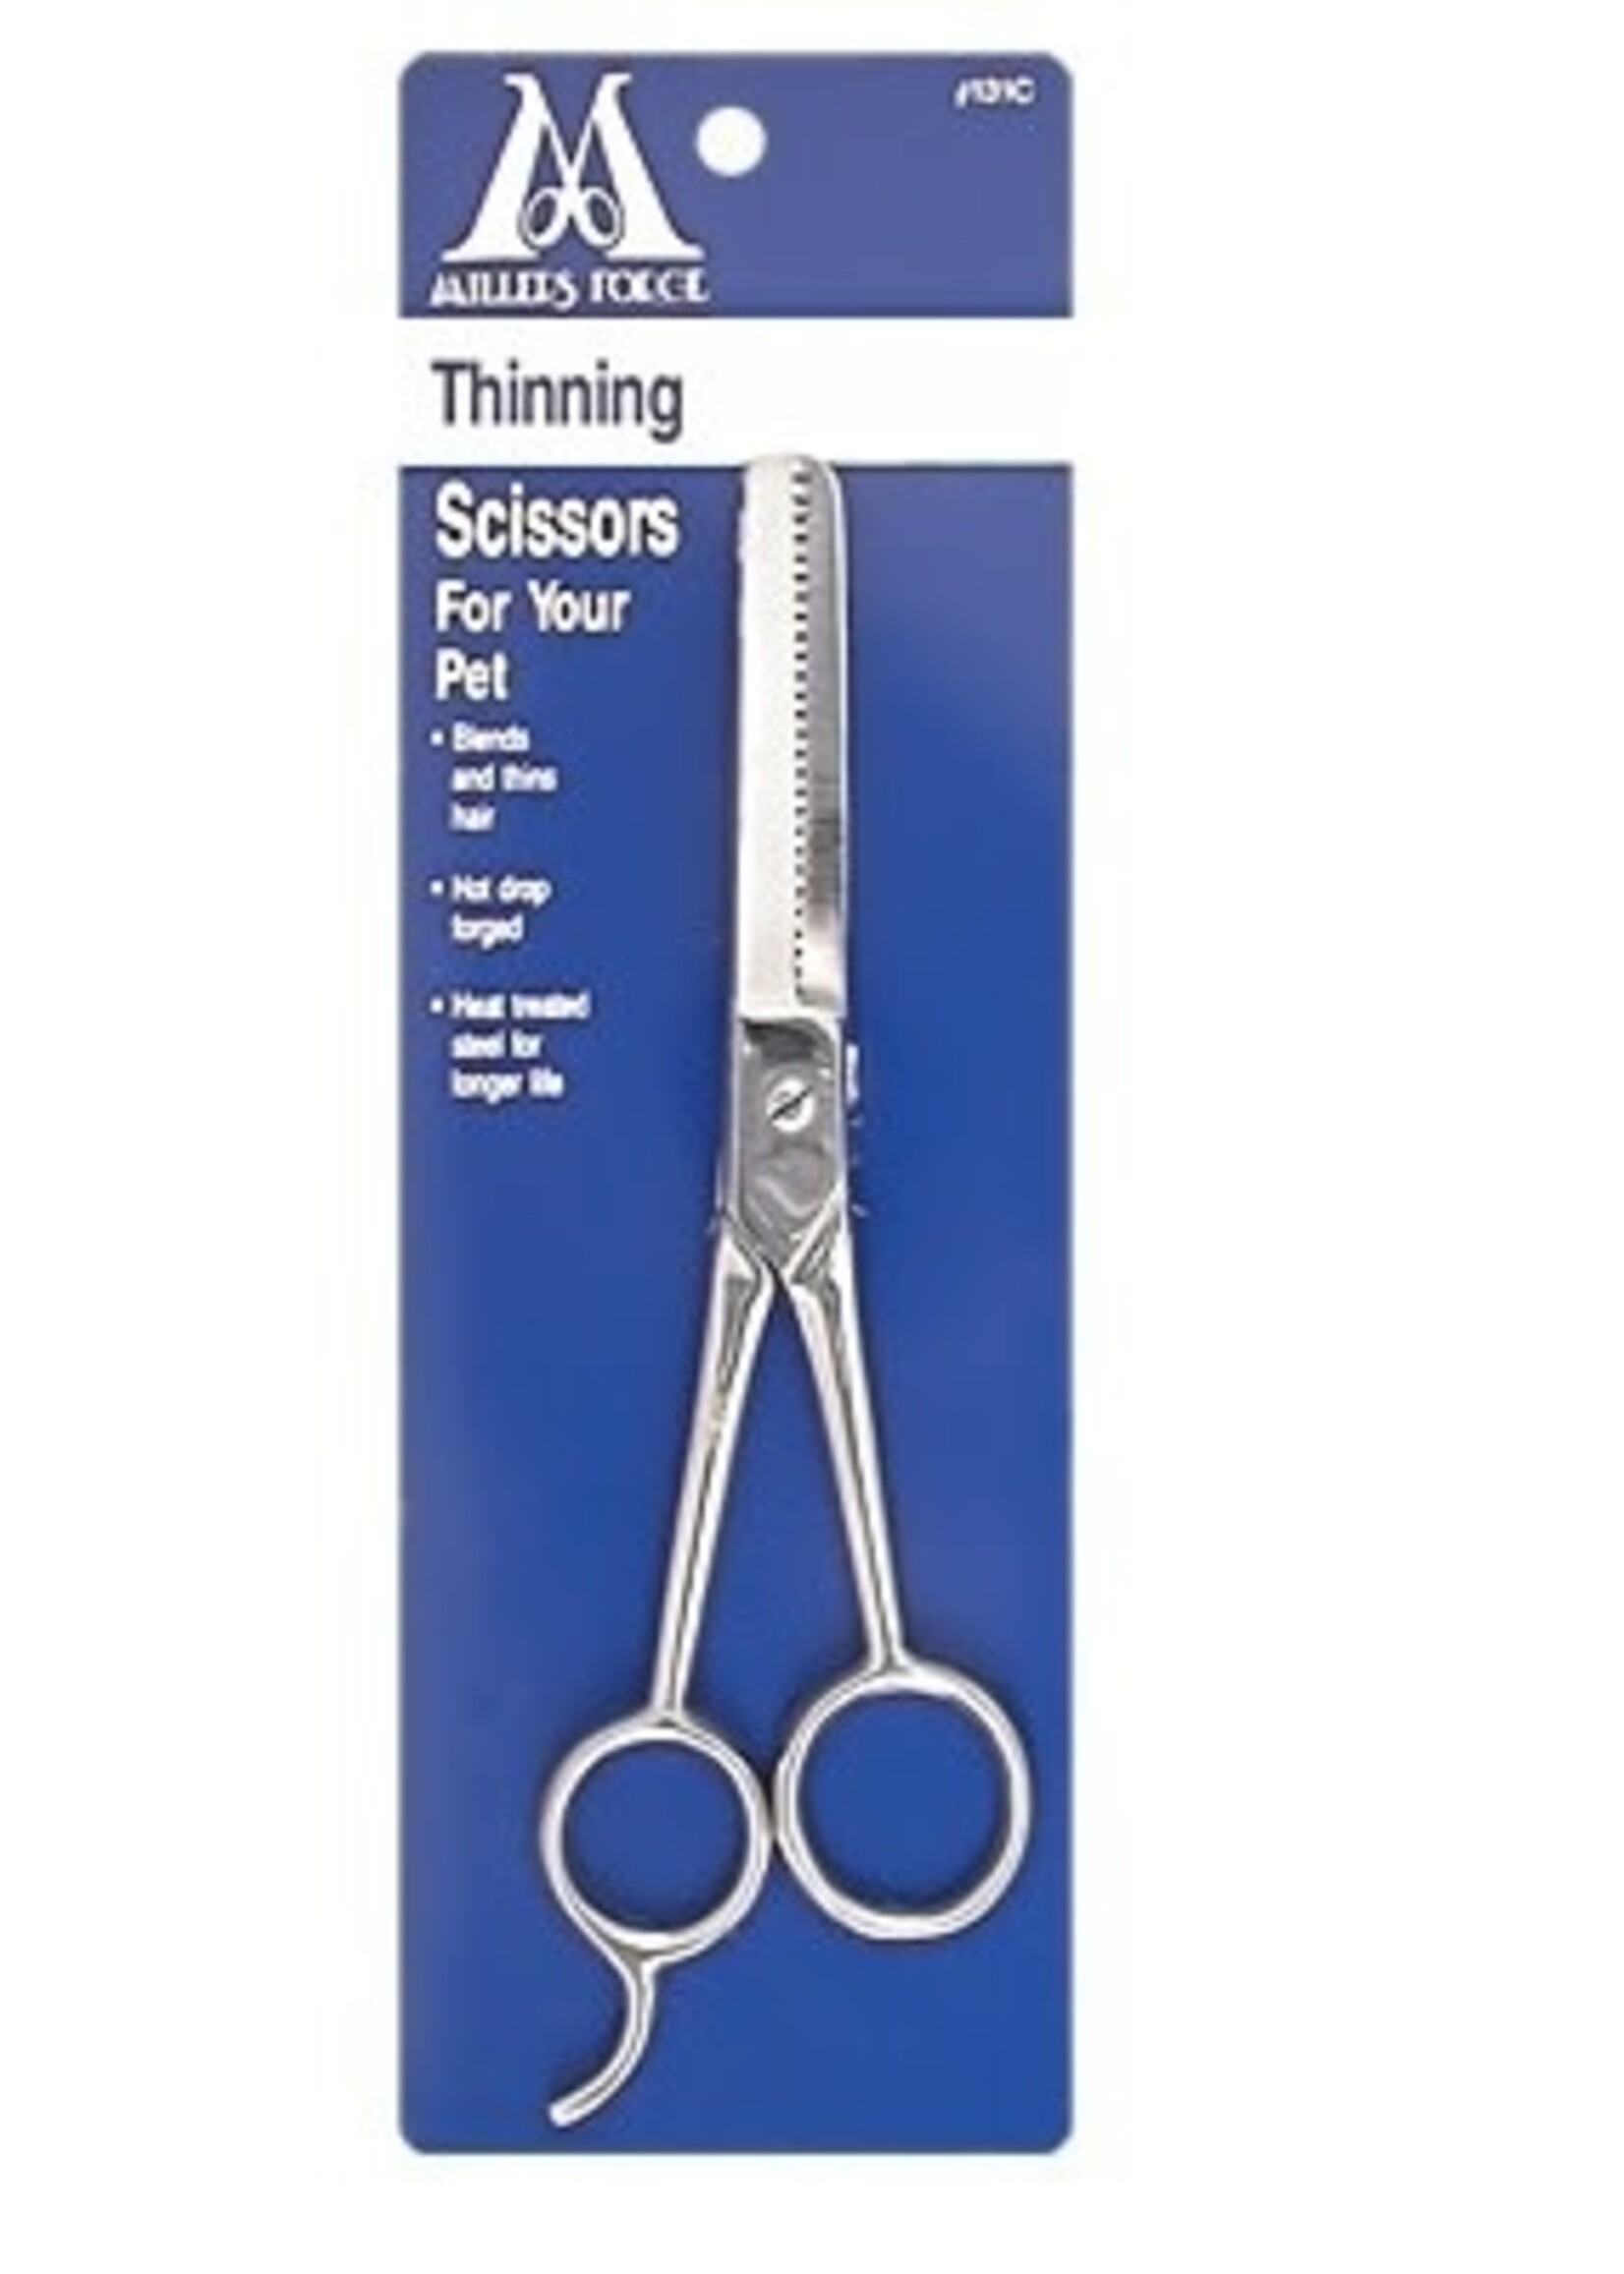 MILLER'S Miller Forge Hair Thinning Scissors